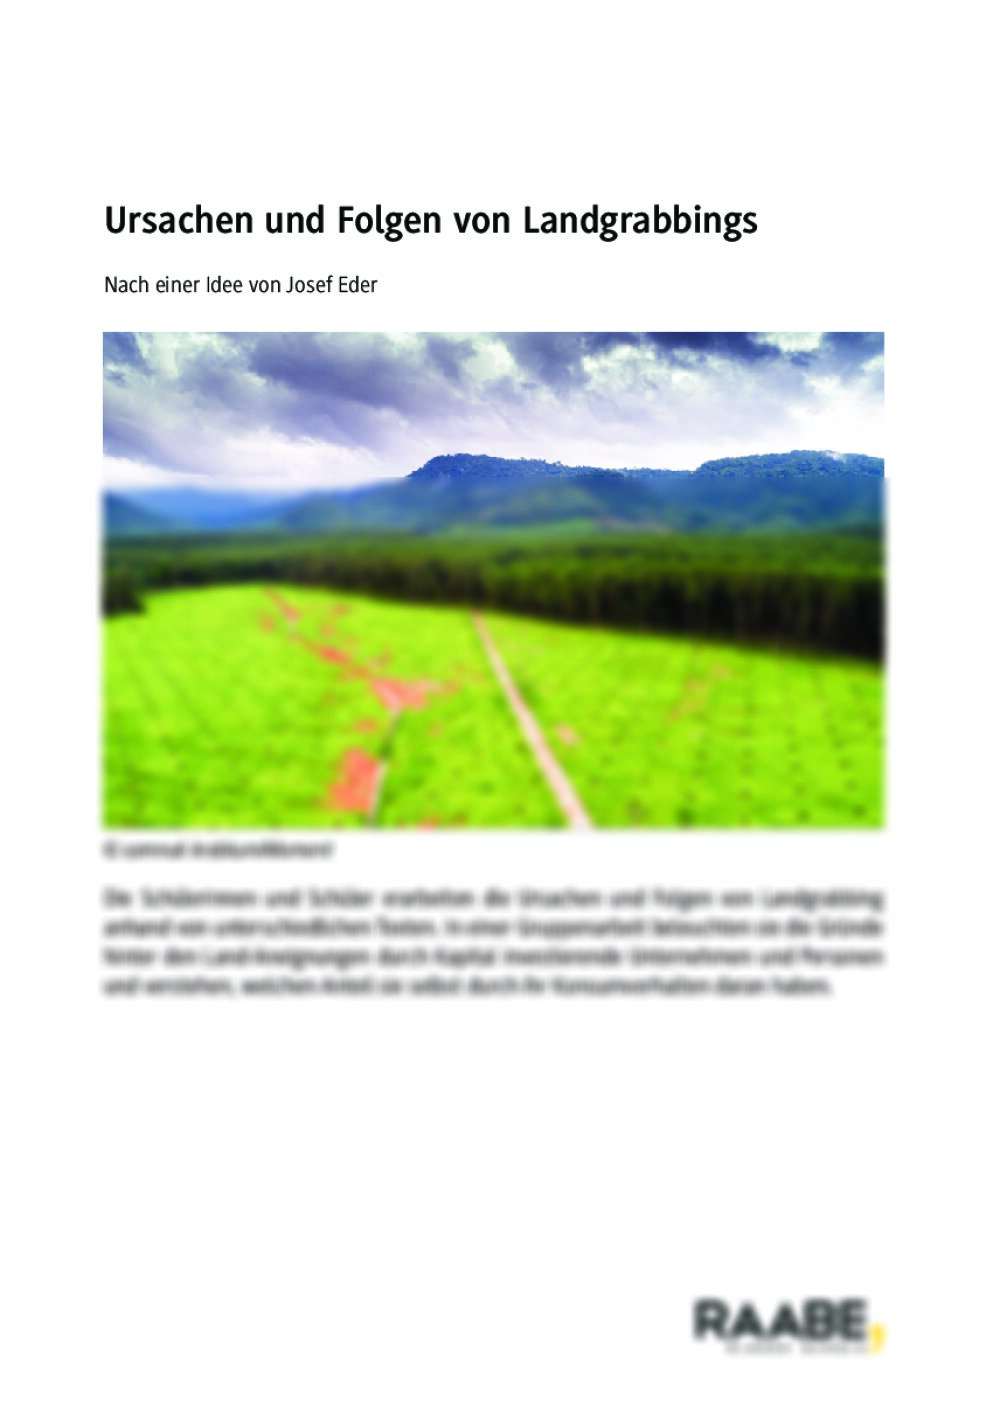 Ursachen und Folgen von Landgrabbing - Seite 1